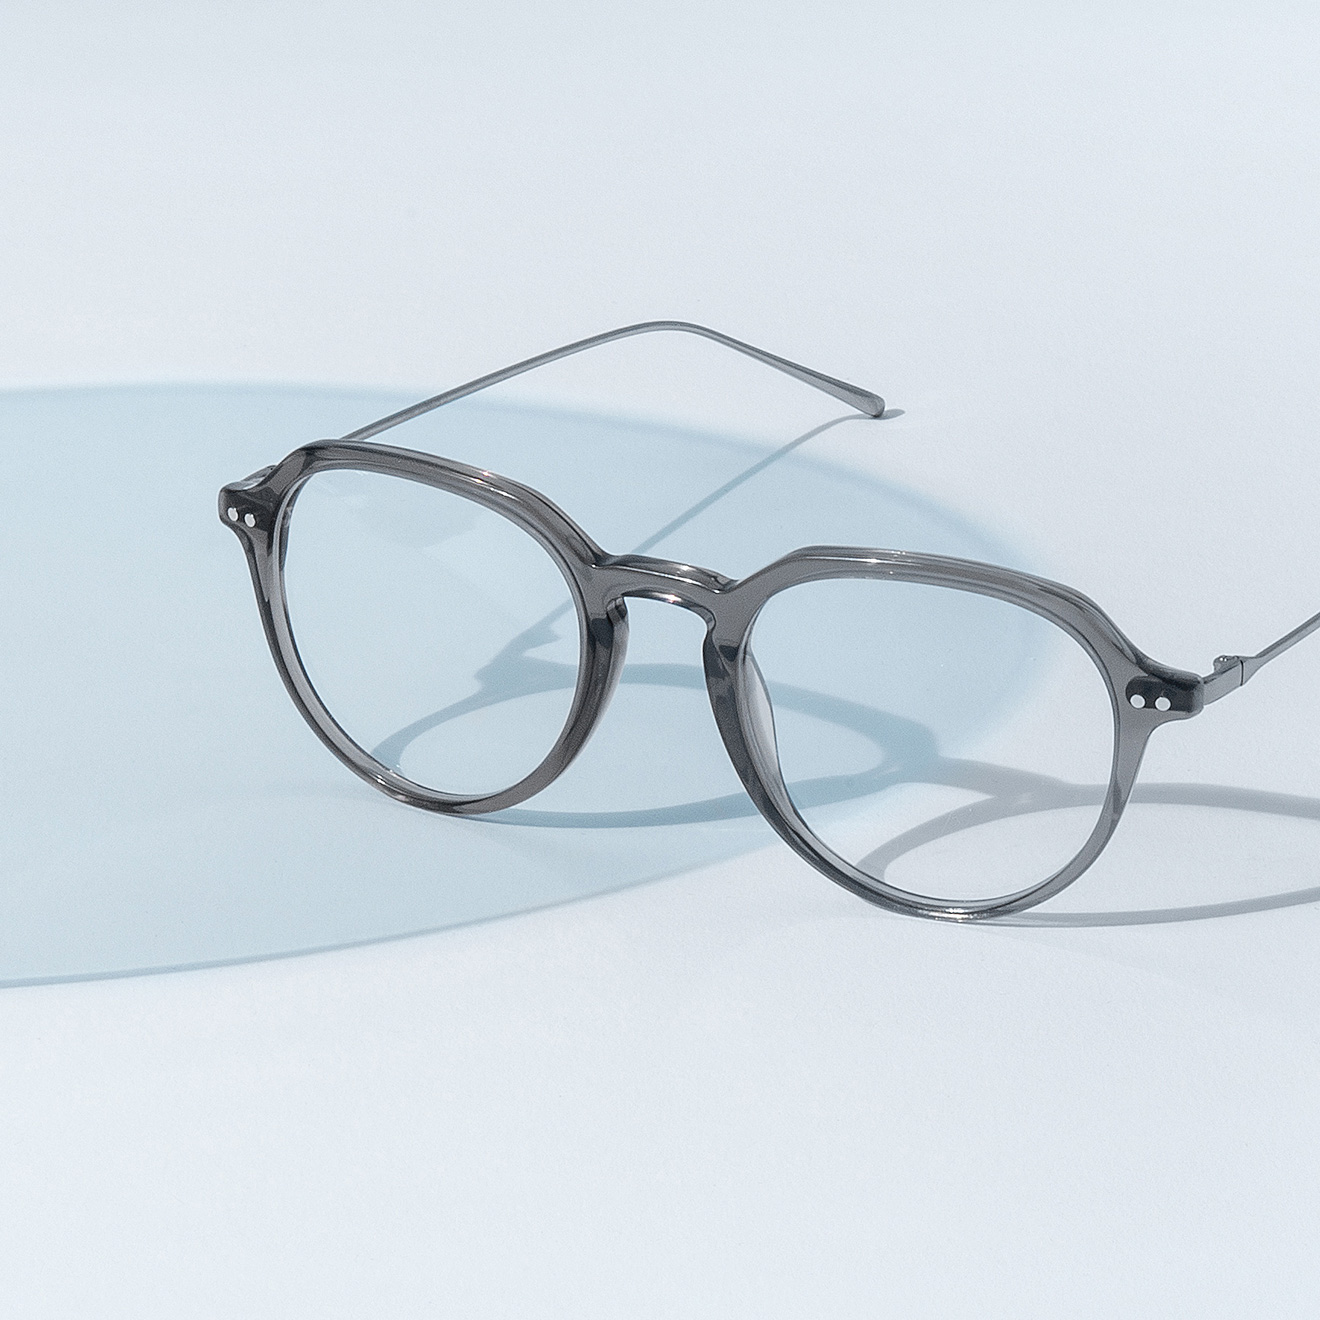 Blaulichtfilter Brillen: Für entspannte Augen am Bildschirm